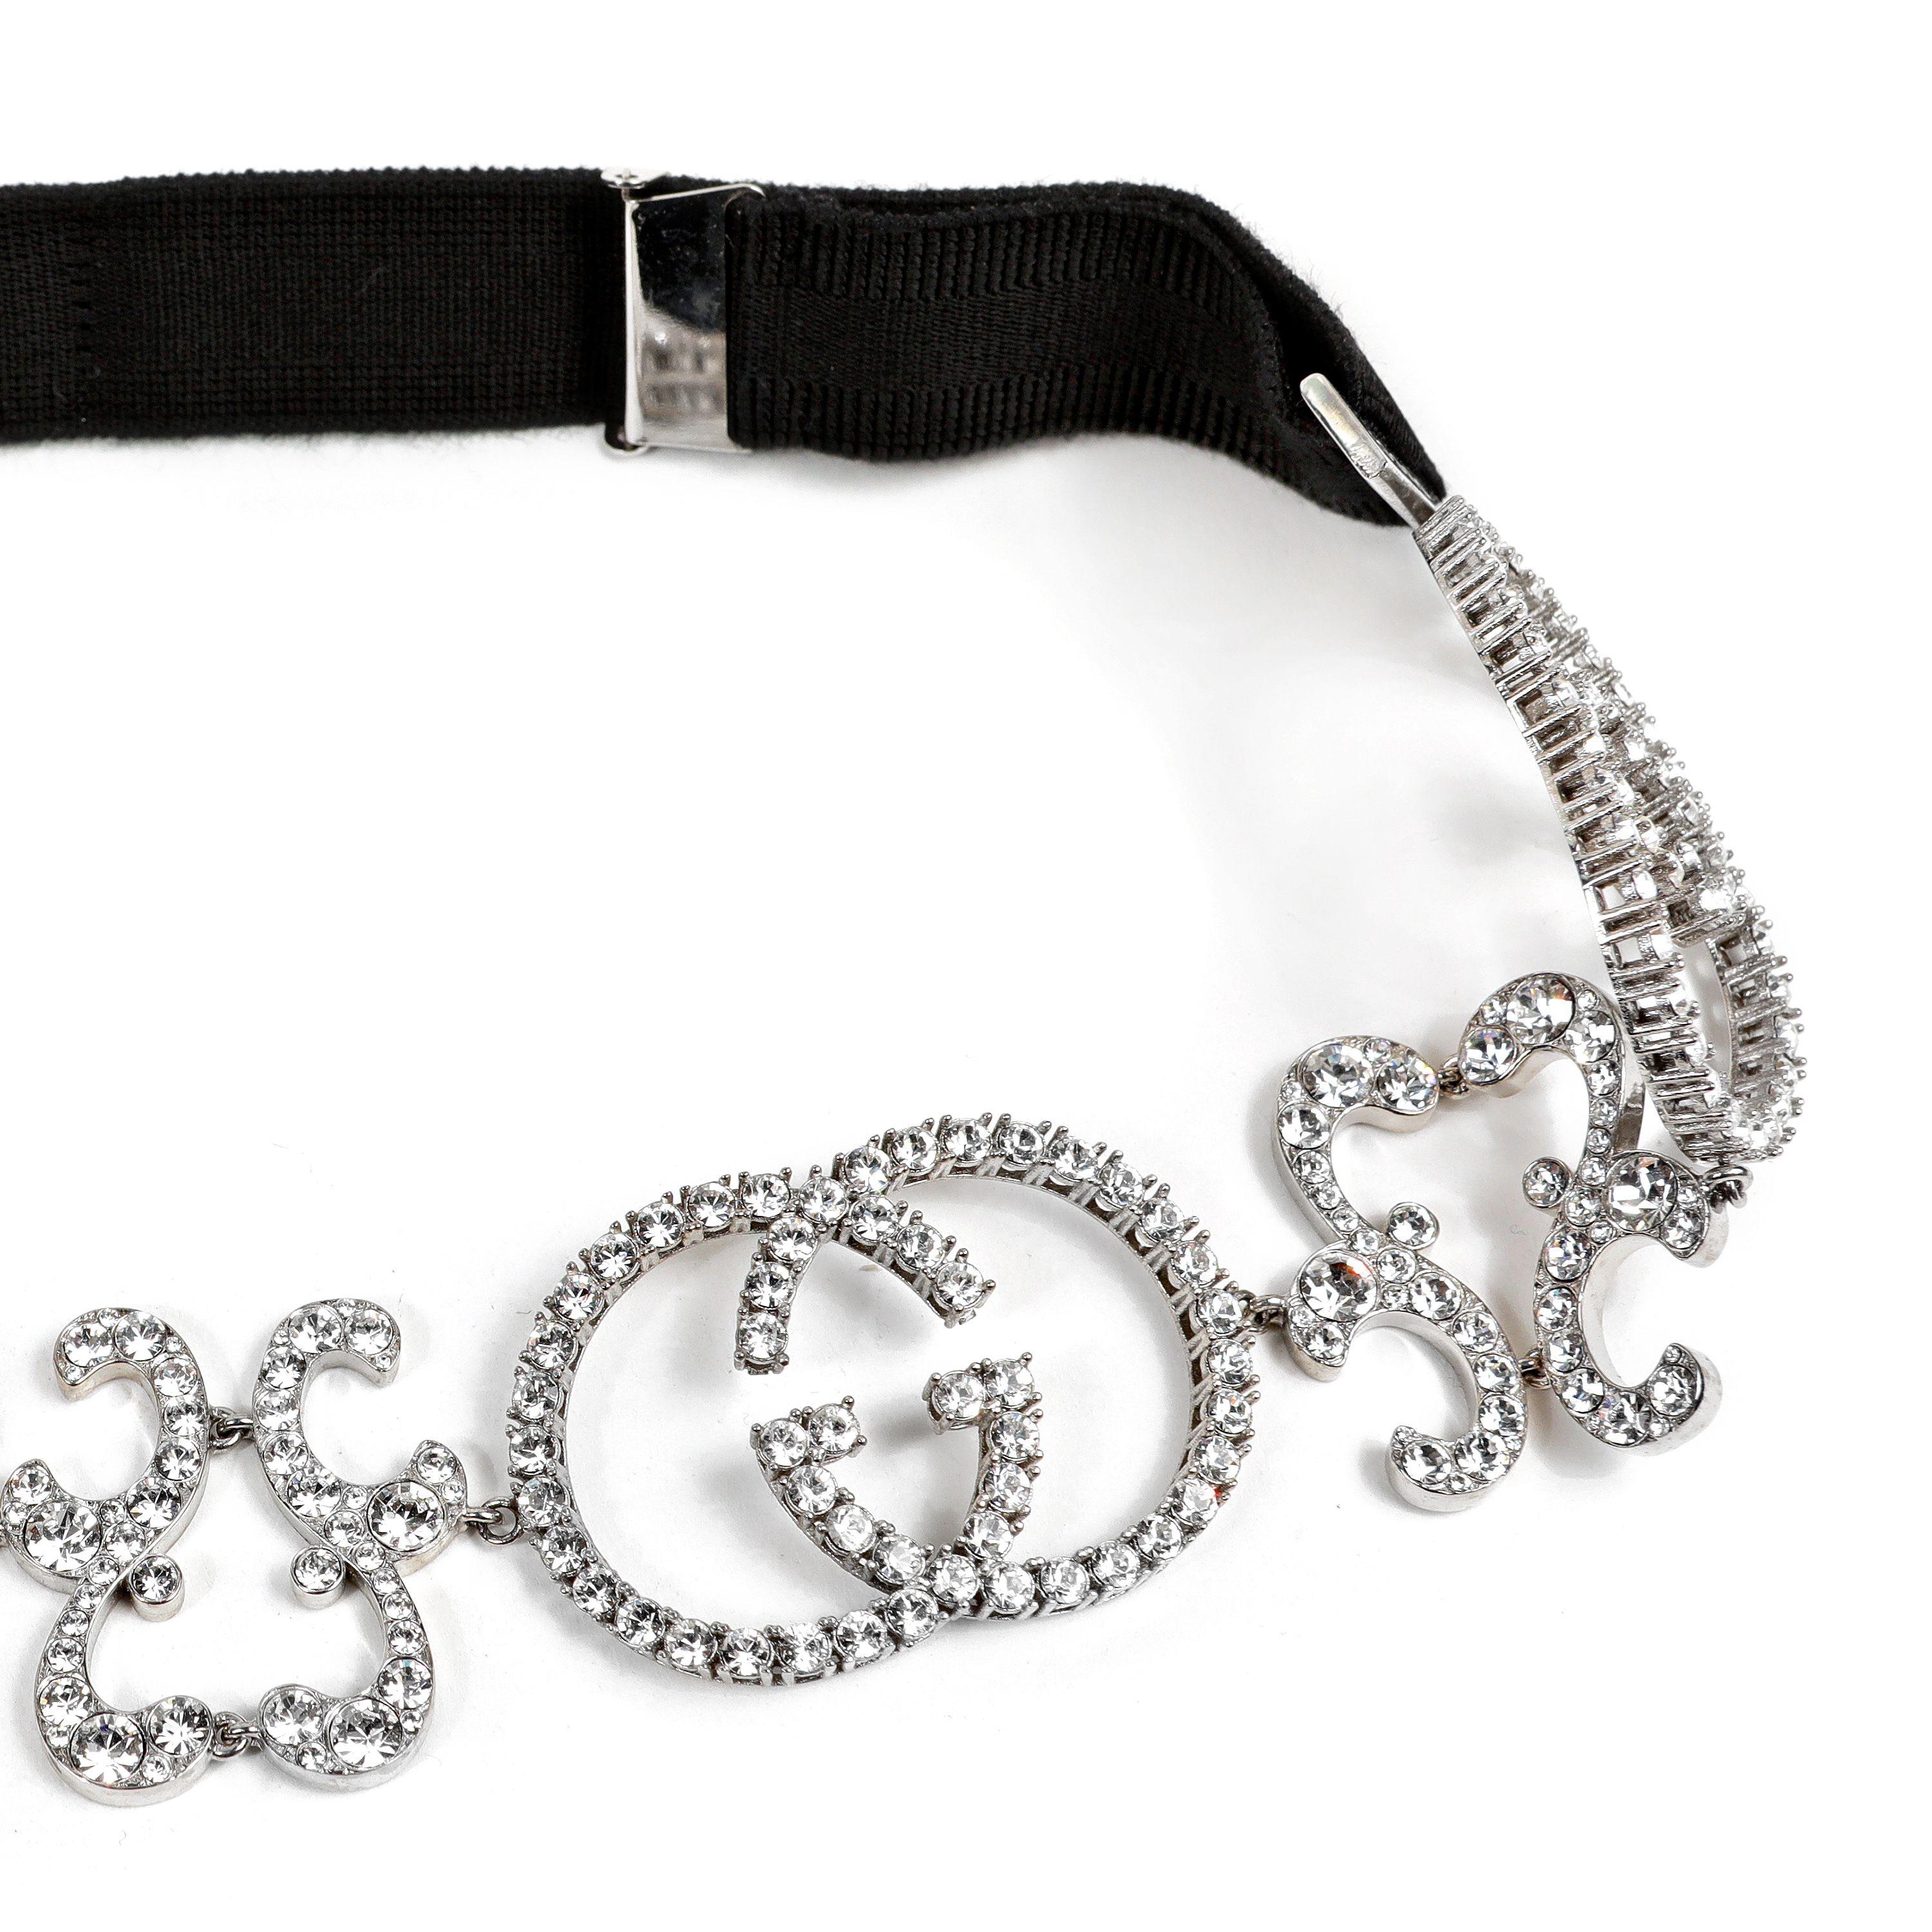 Dieses authentische Gucci Crystal GG Stirnband ist in tadellosem Zustand.  Schwarzes, längenverstellbares Band mit verschlungenem GG Kristalldesign.  
PBF 13805
